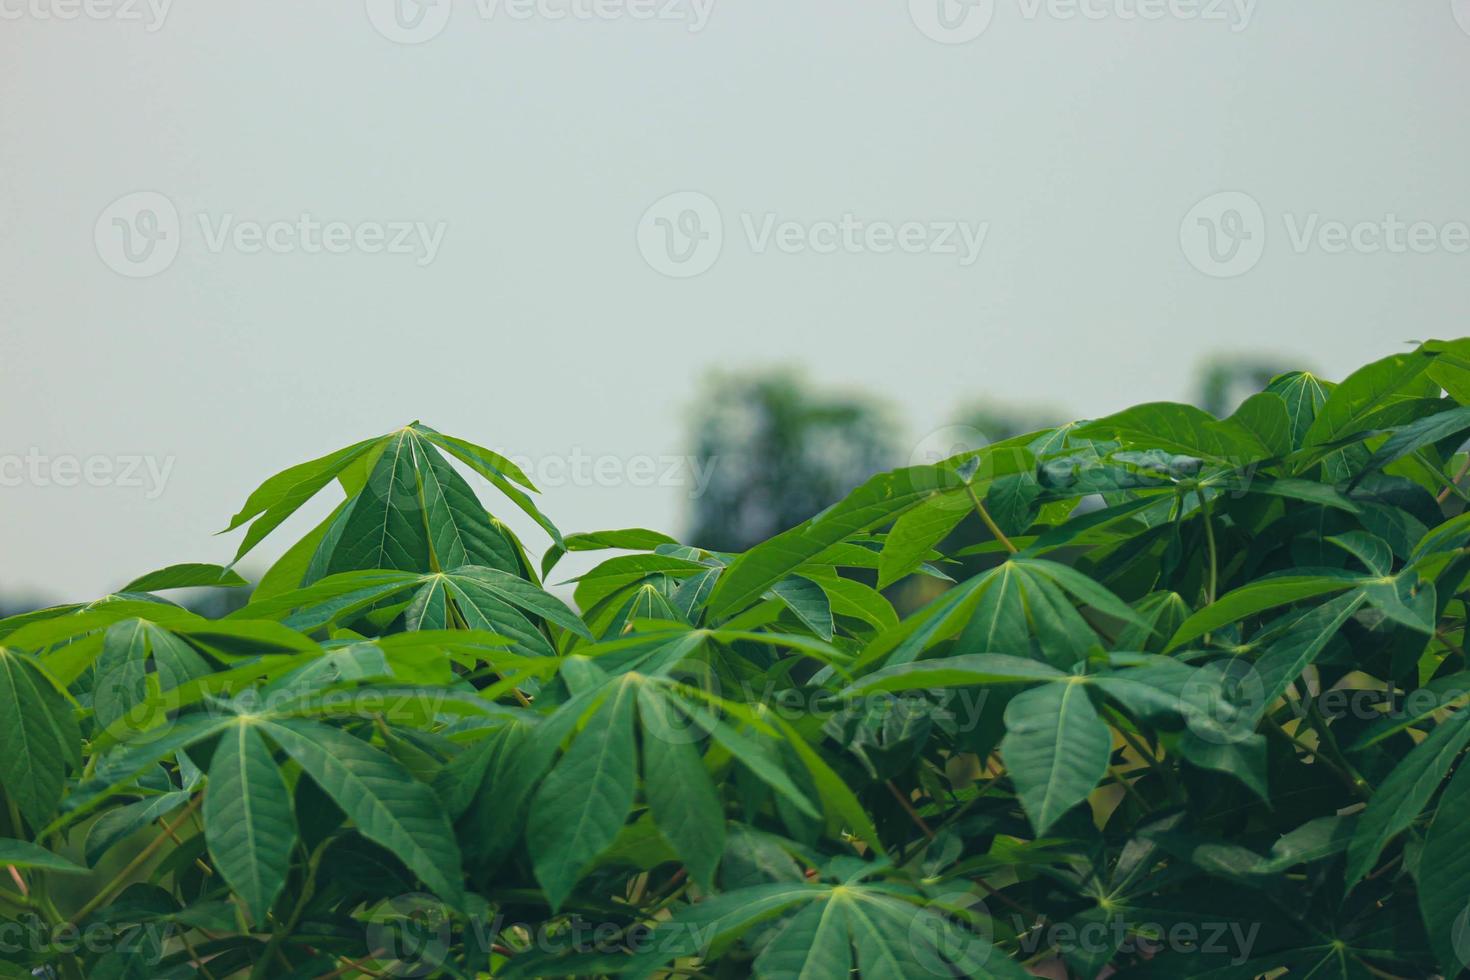 c'est une photo des feuilles d'un arbre de manioc qui sont très luxuriantes